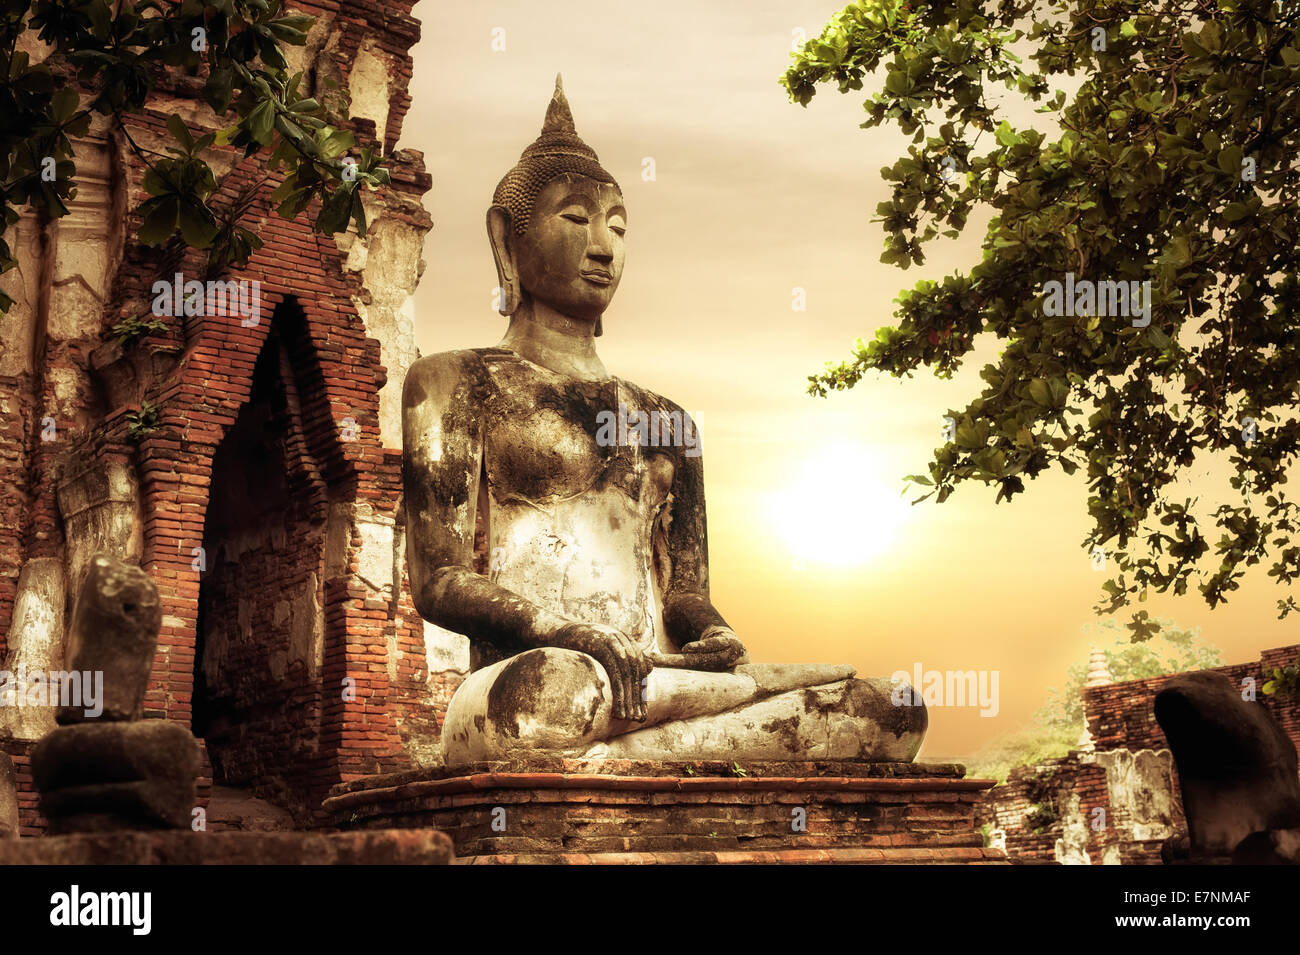 Asiatische Sakralarchitektur. Alten Sandstein Skulptur des Buddha im Wat Mahathat Ruinen unter Sonnenuntergang Himmel. Ayutthaya, Thailand Stockfoto